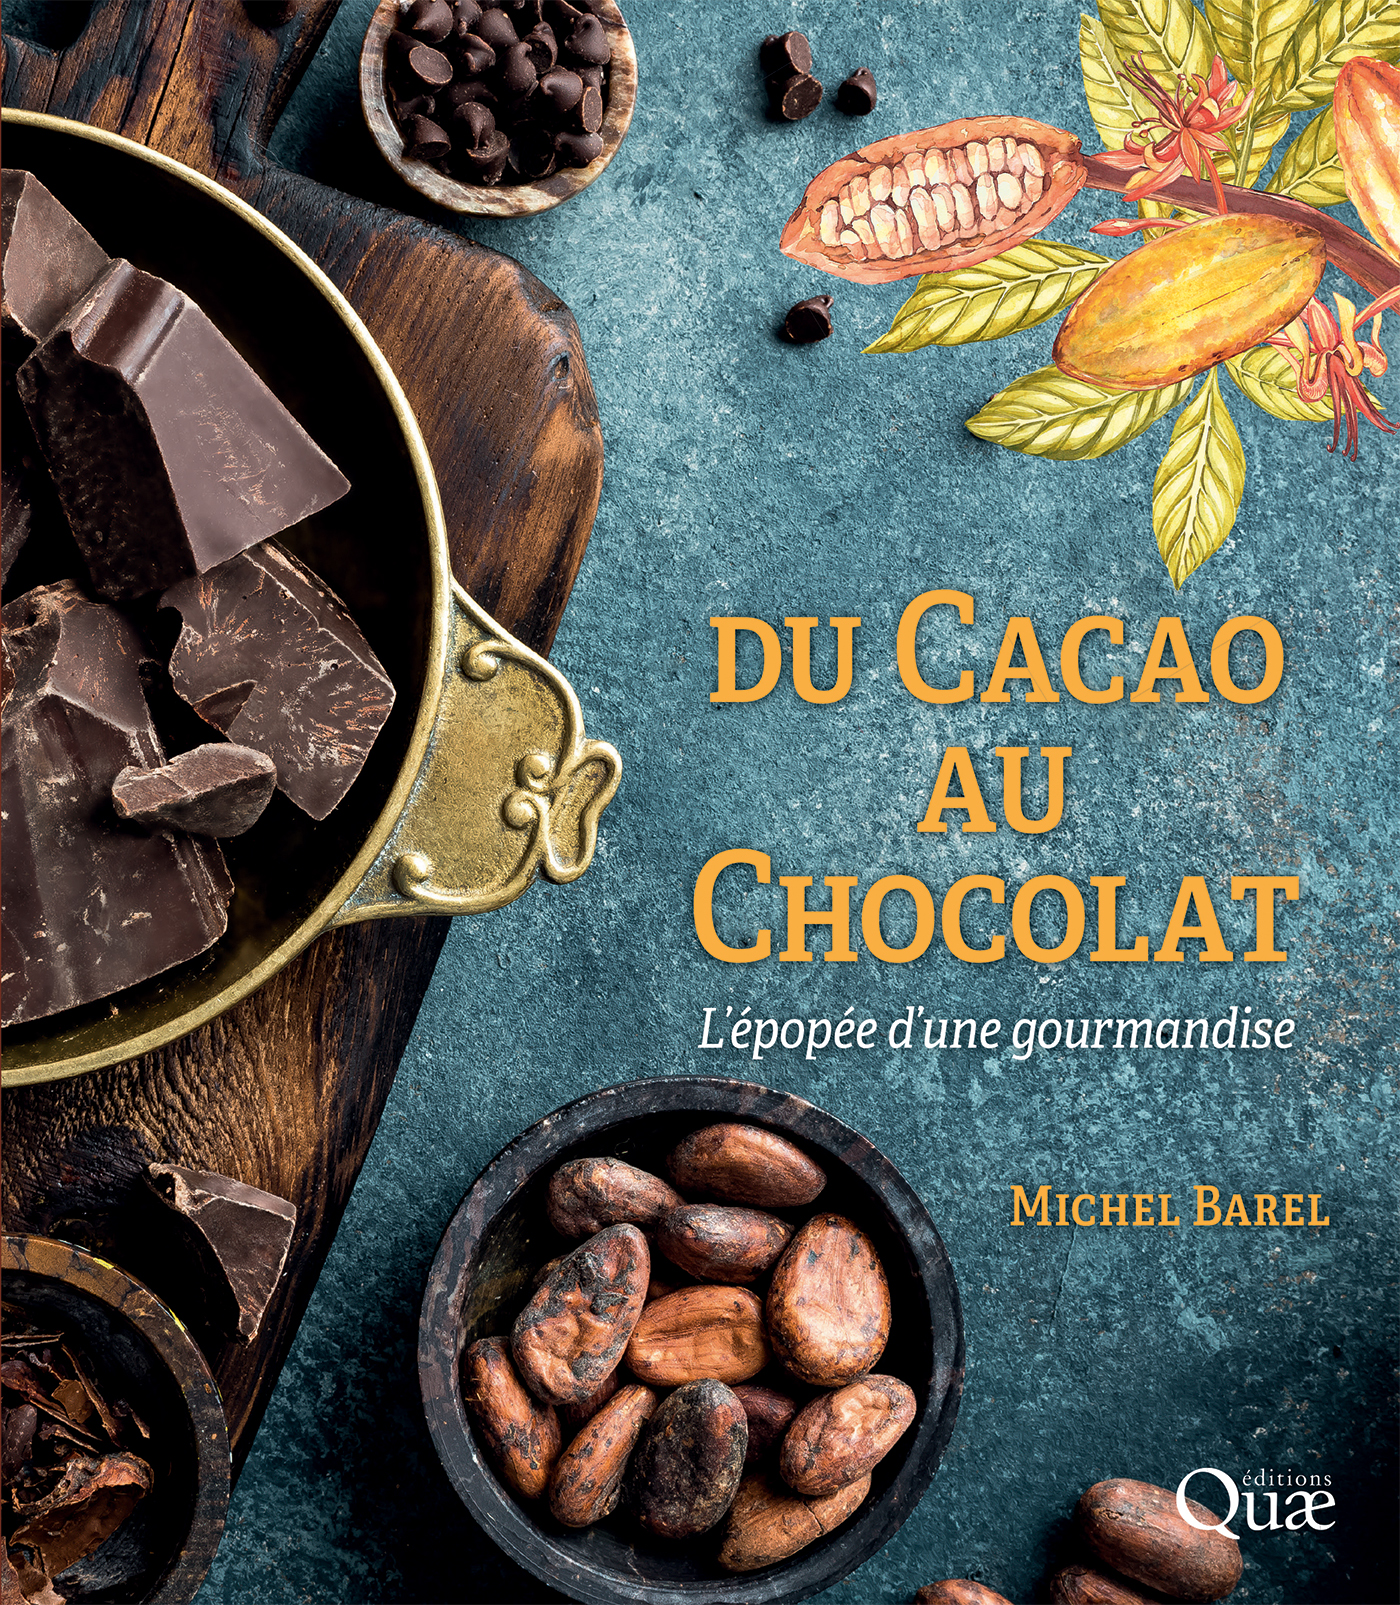 Composition des tablettes en masse de cacao, sucre et lait